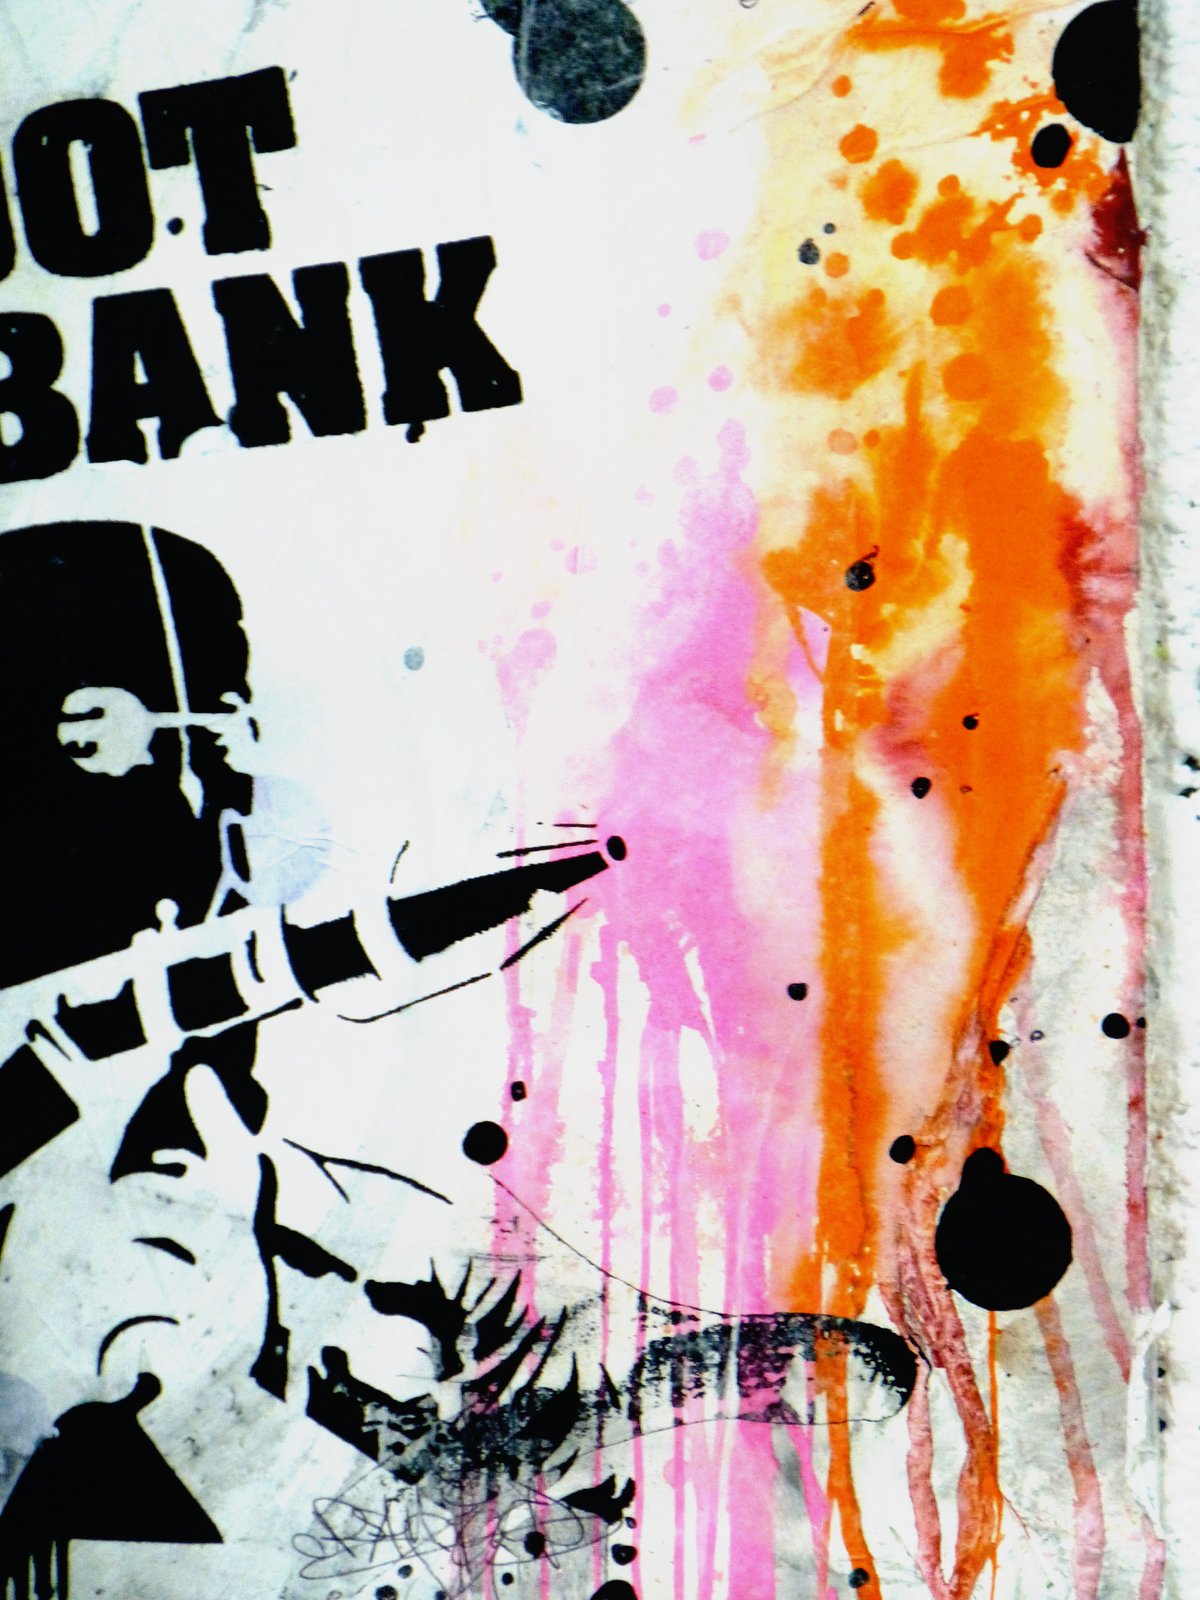 Image of SHOOT THE BANK X Dot, Dot, Dot... ... ...